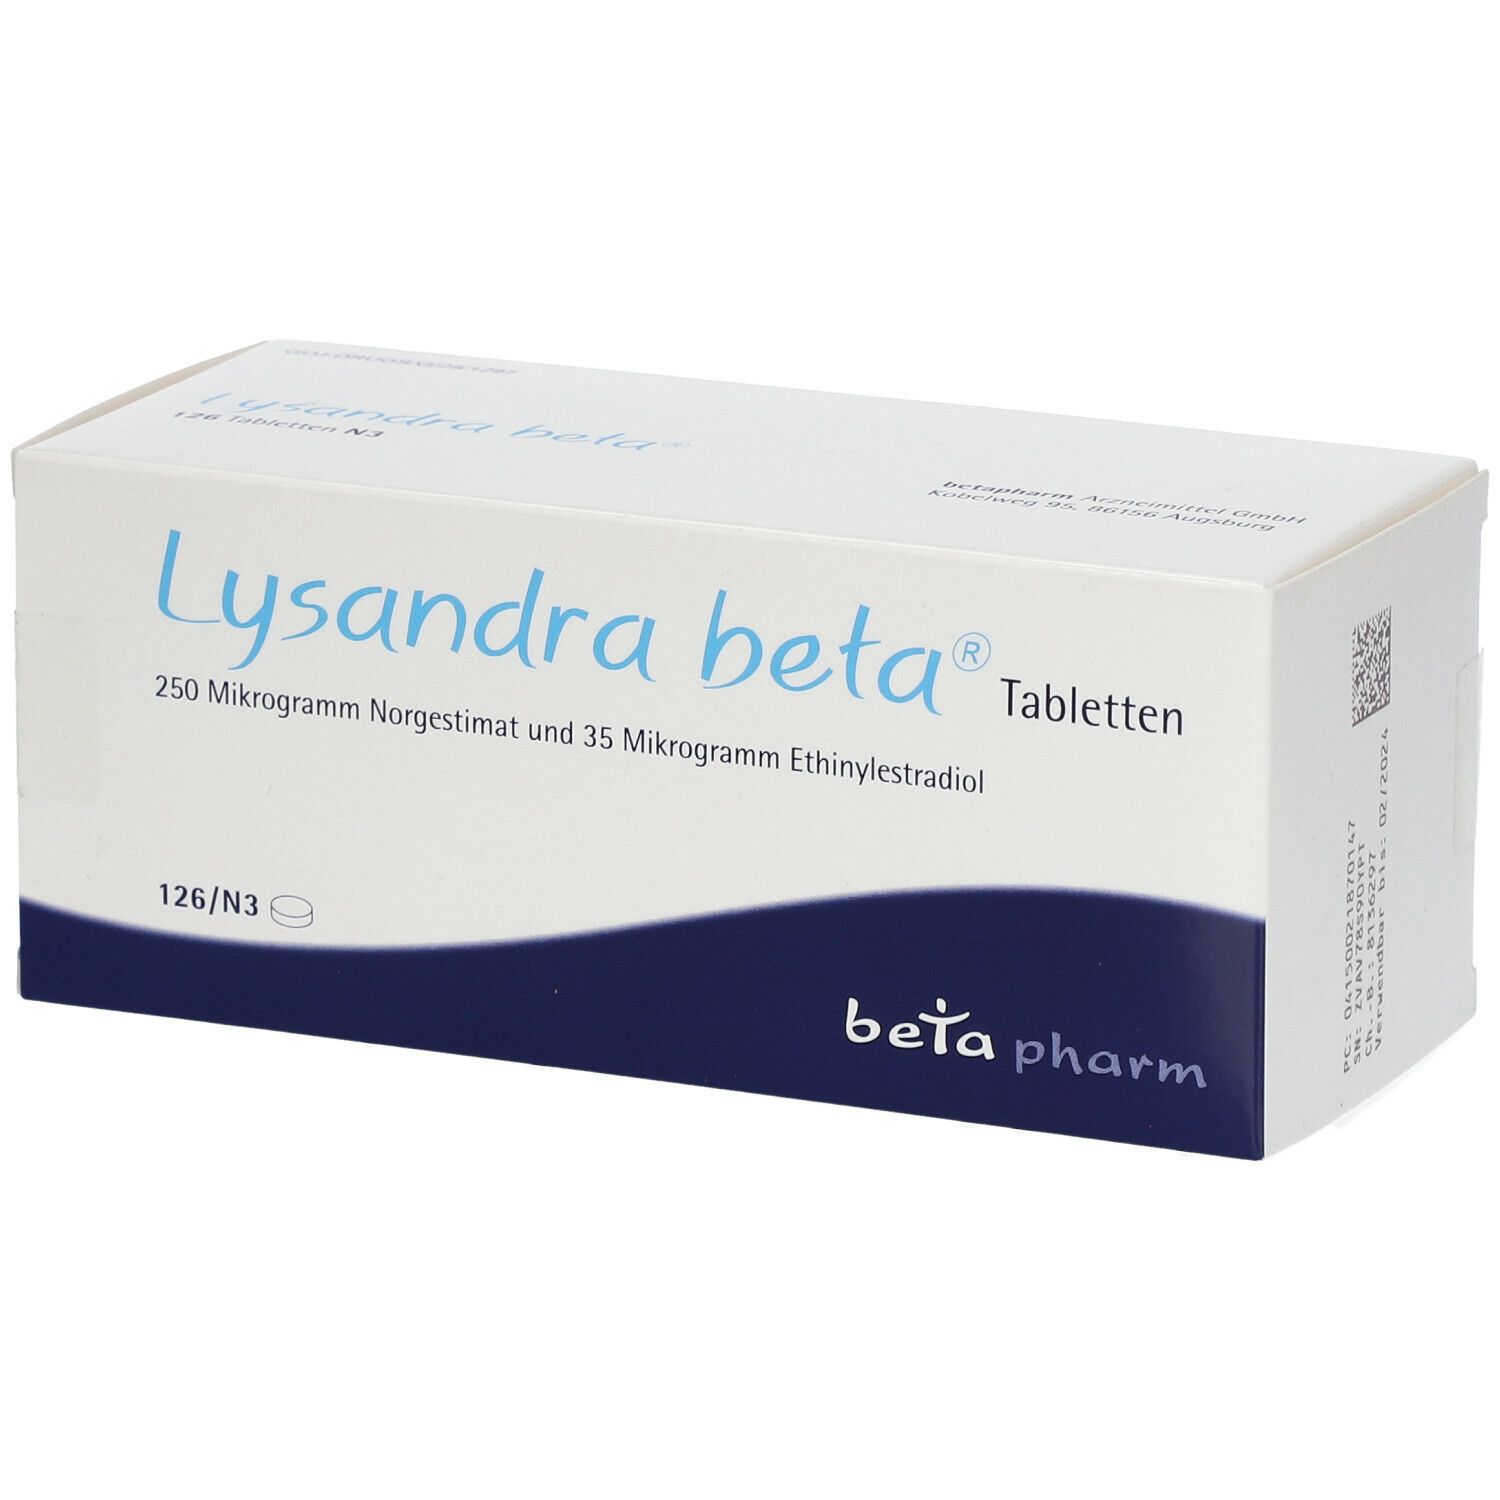 Lysandra beta®